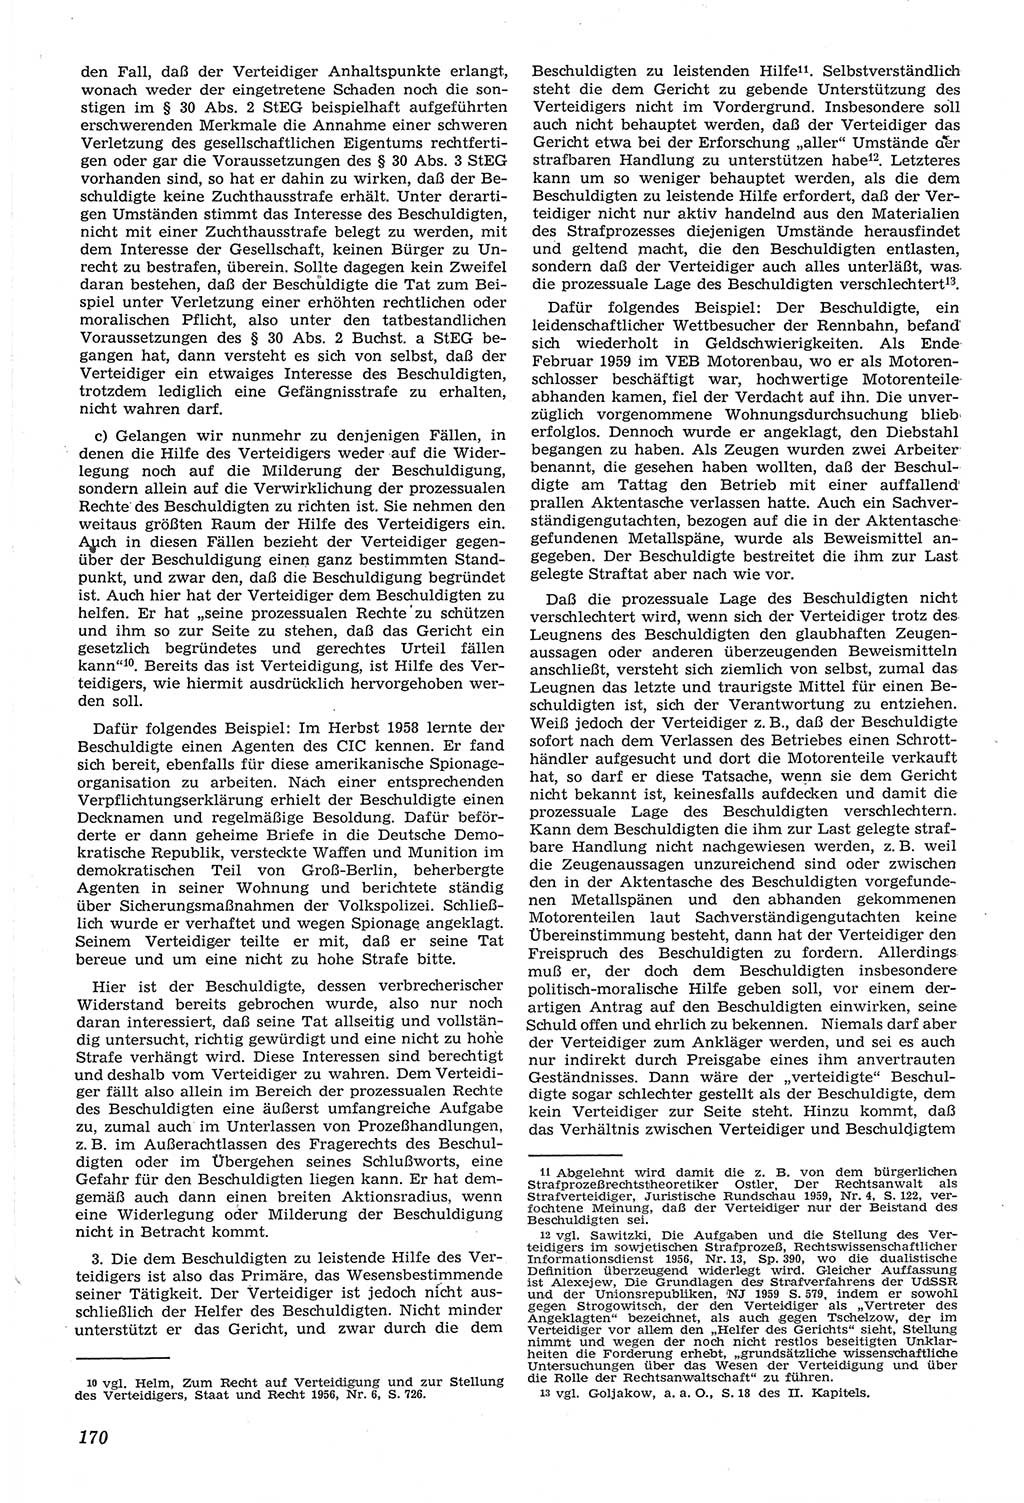 Neue Justiz (NJ), Zeitschrift für Recht und Rechtswissenschaft [Deutsche Demokratische Republik (DDR)], 14. Jahrgang 1960, Seite 170 (NJ DDR 1960, S. 170)